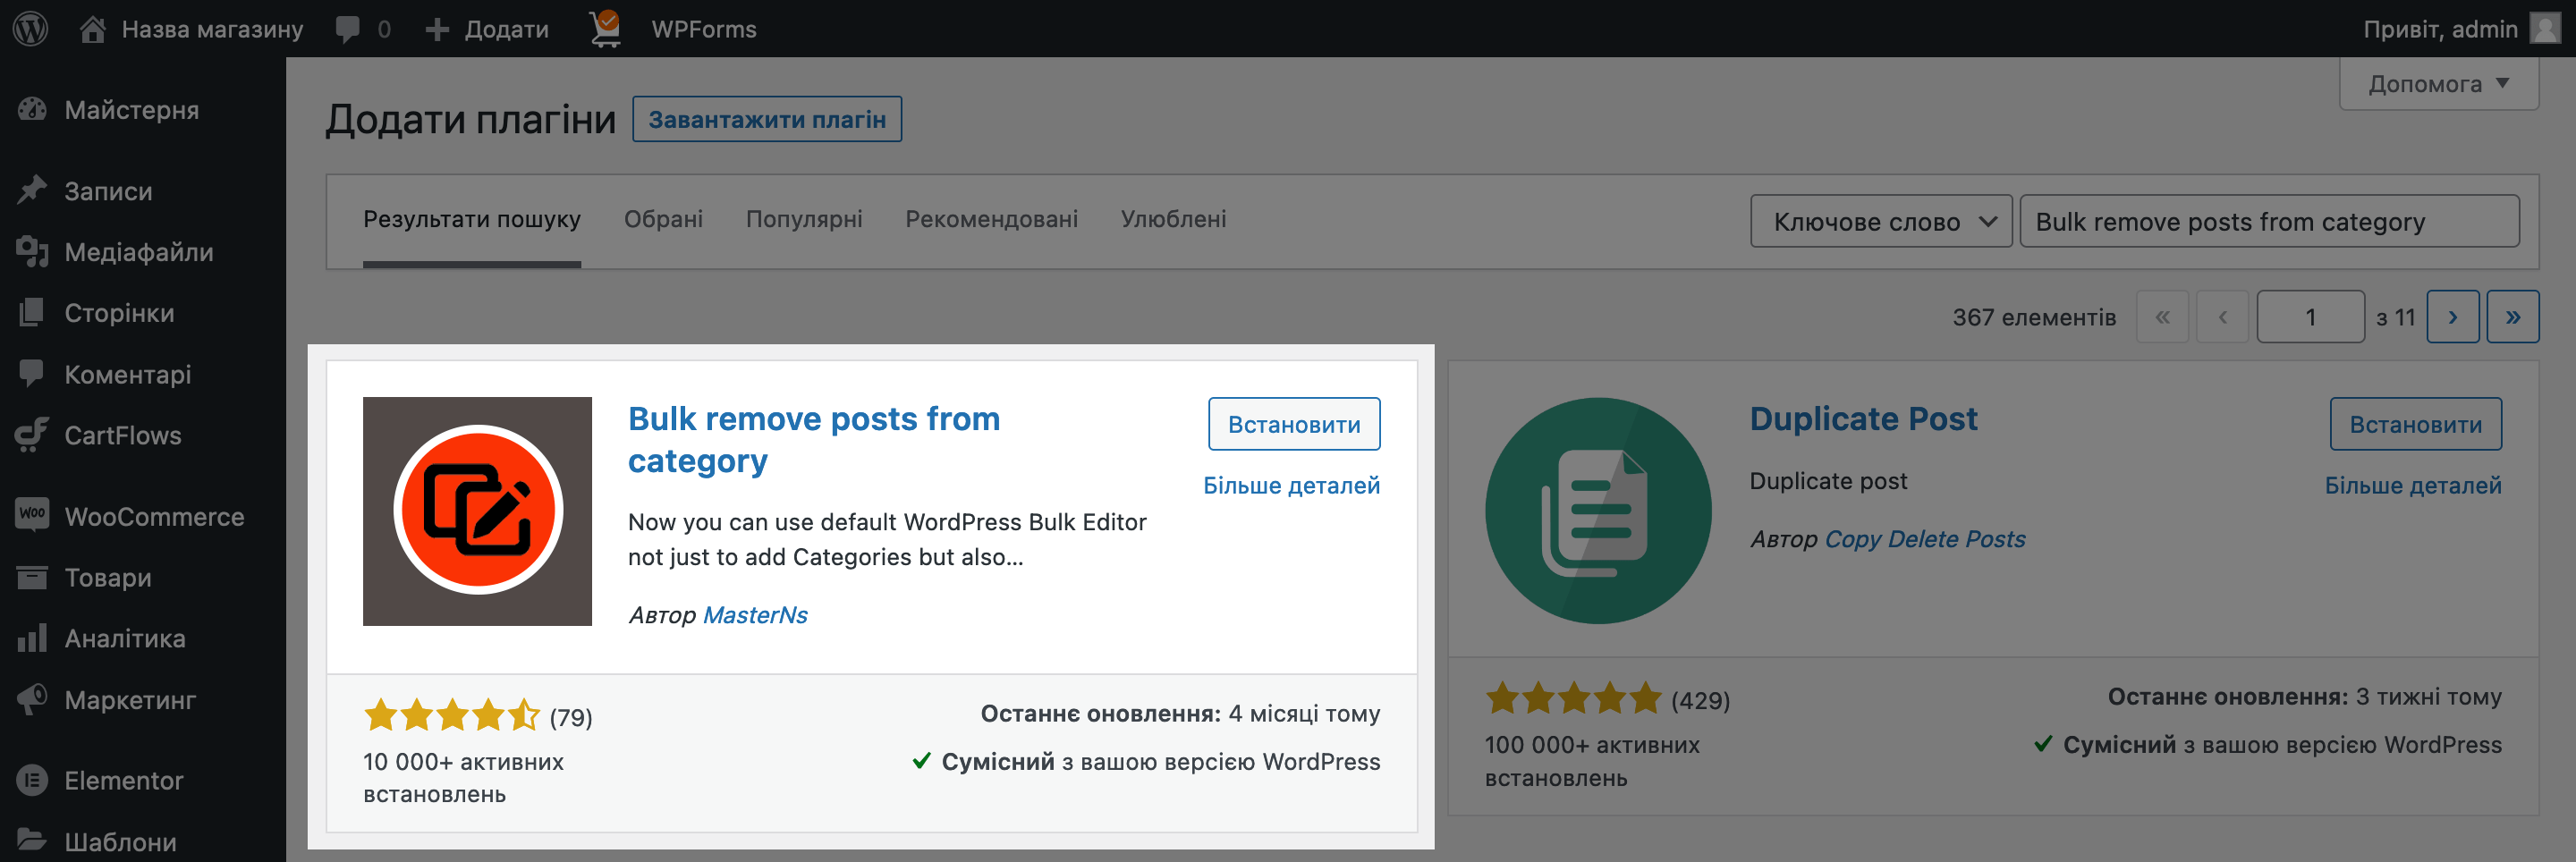 Створення інтернет-магазину Вордпрес: встановлення плагіна «Bulk remove posts from category»